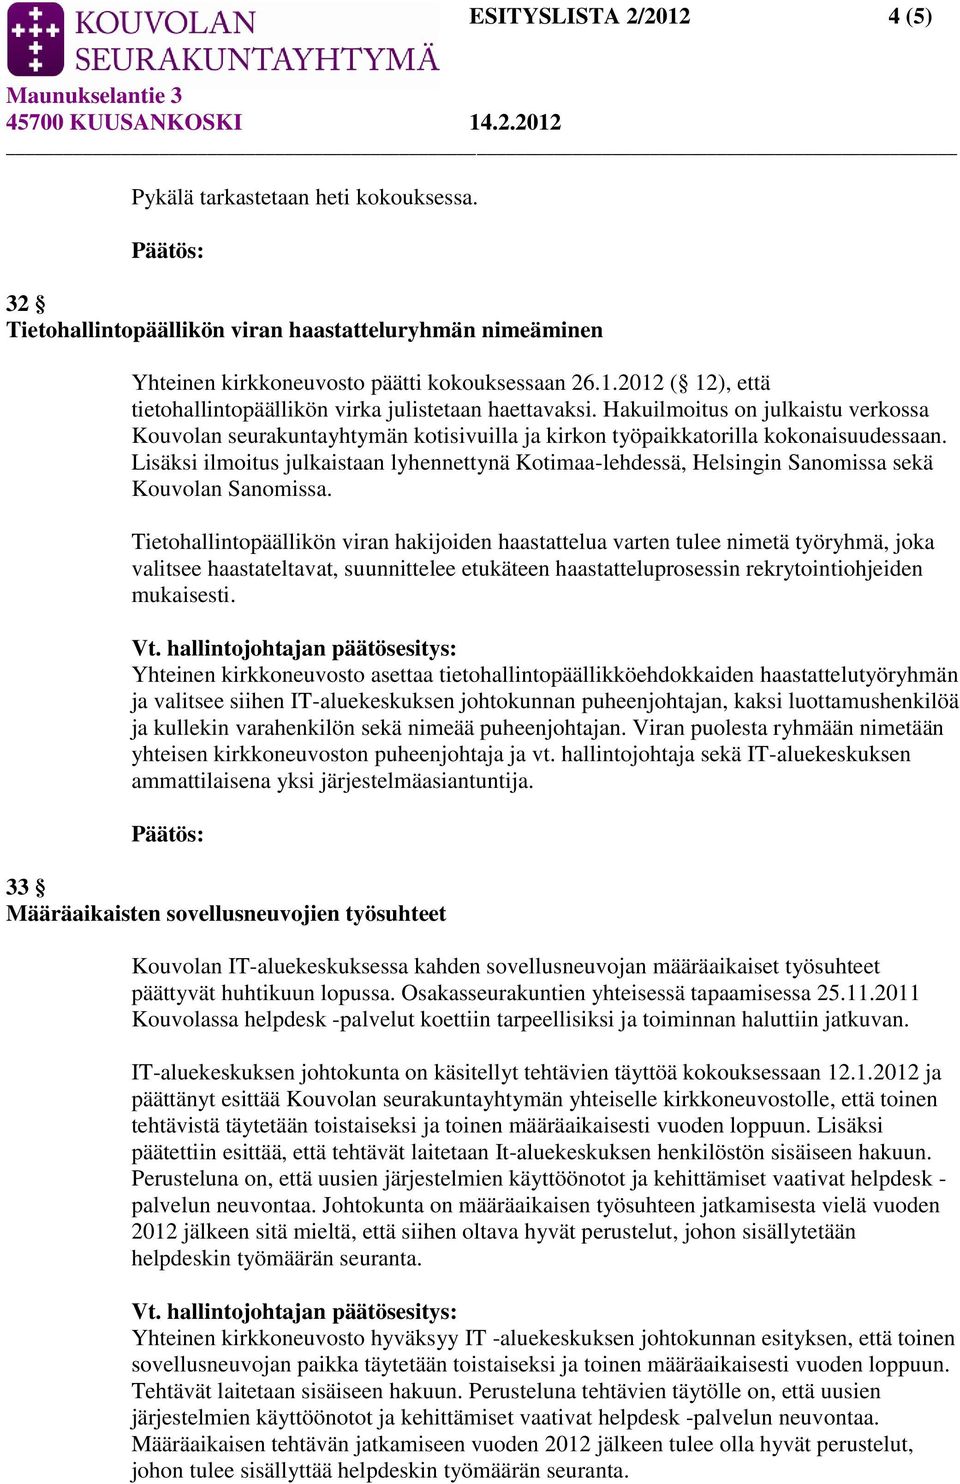 Lisäksi ilmoitus julkaistaan lyhennettynä Kotimaa-lehdessä, Helsingin Sanomissa sekä Kouvolan Sanomissa.